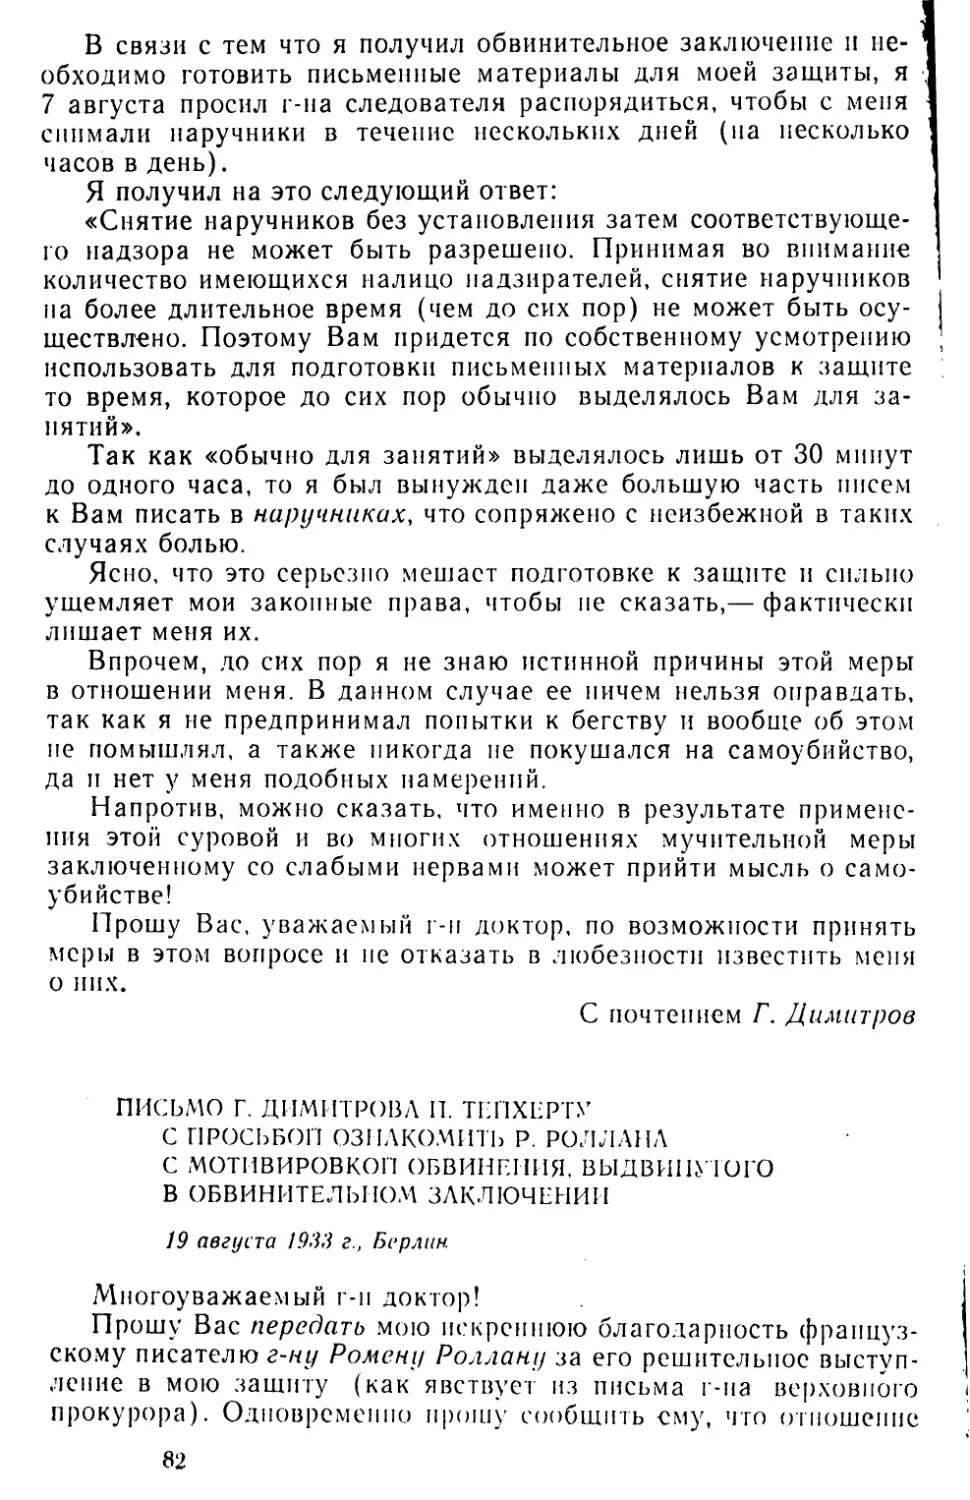 Письмо Г. Димитрова П. Тейхерту с просьбой ознакомить Р. Роллана с мотивировкой обвинения, выдвинутого в обвинительном заключении. 19 августа 1933 г